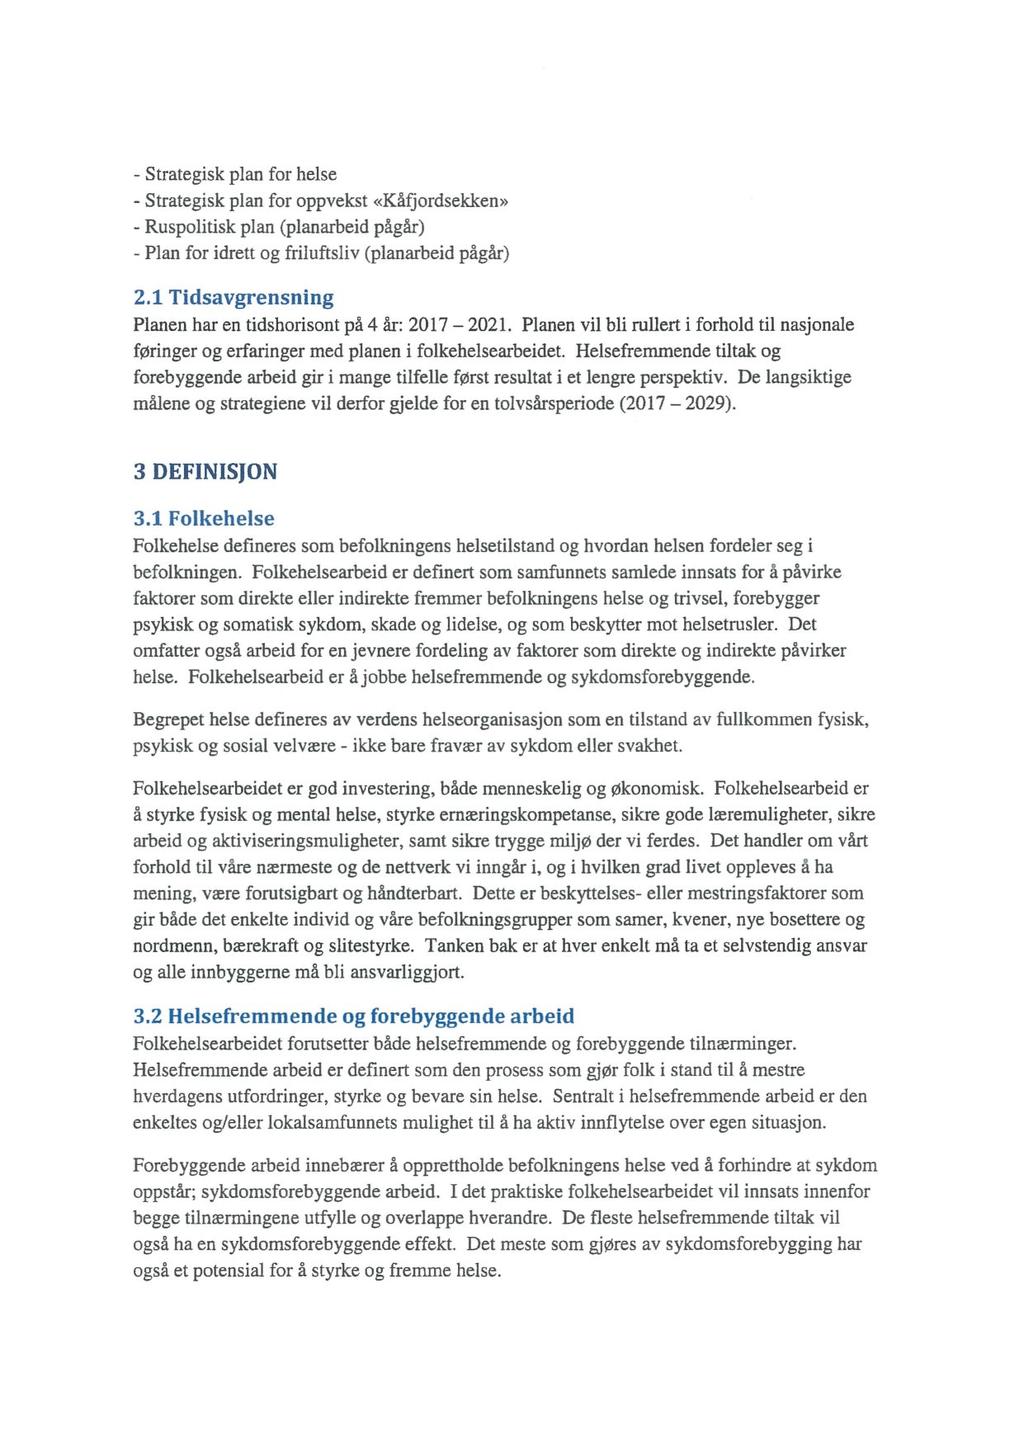 Strategisk plan for helse - Strategisk plan for oppvekst «Kåfjordsekken» - Ruspolitisk plan (planarbeid pågår) - Plan for idrett og friluftsliv (planarbeid pågår) 2.